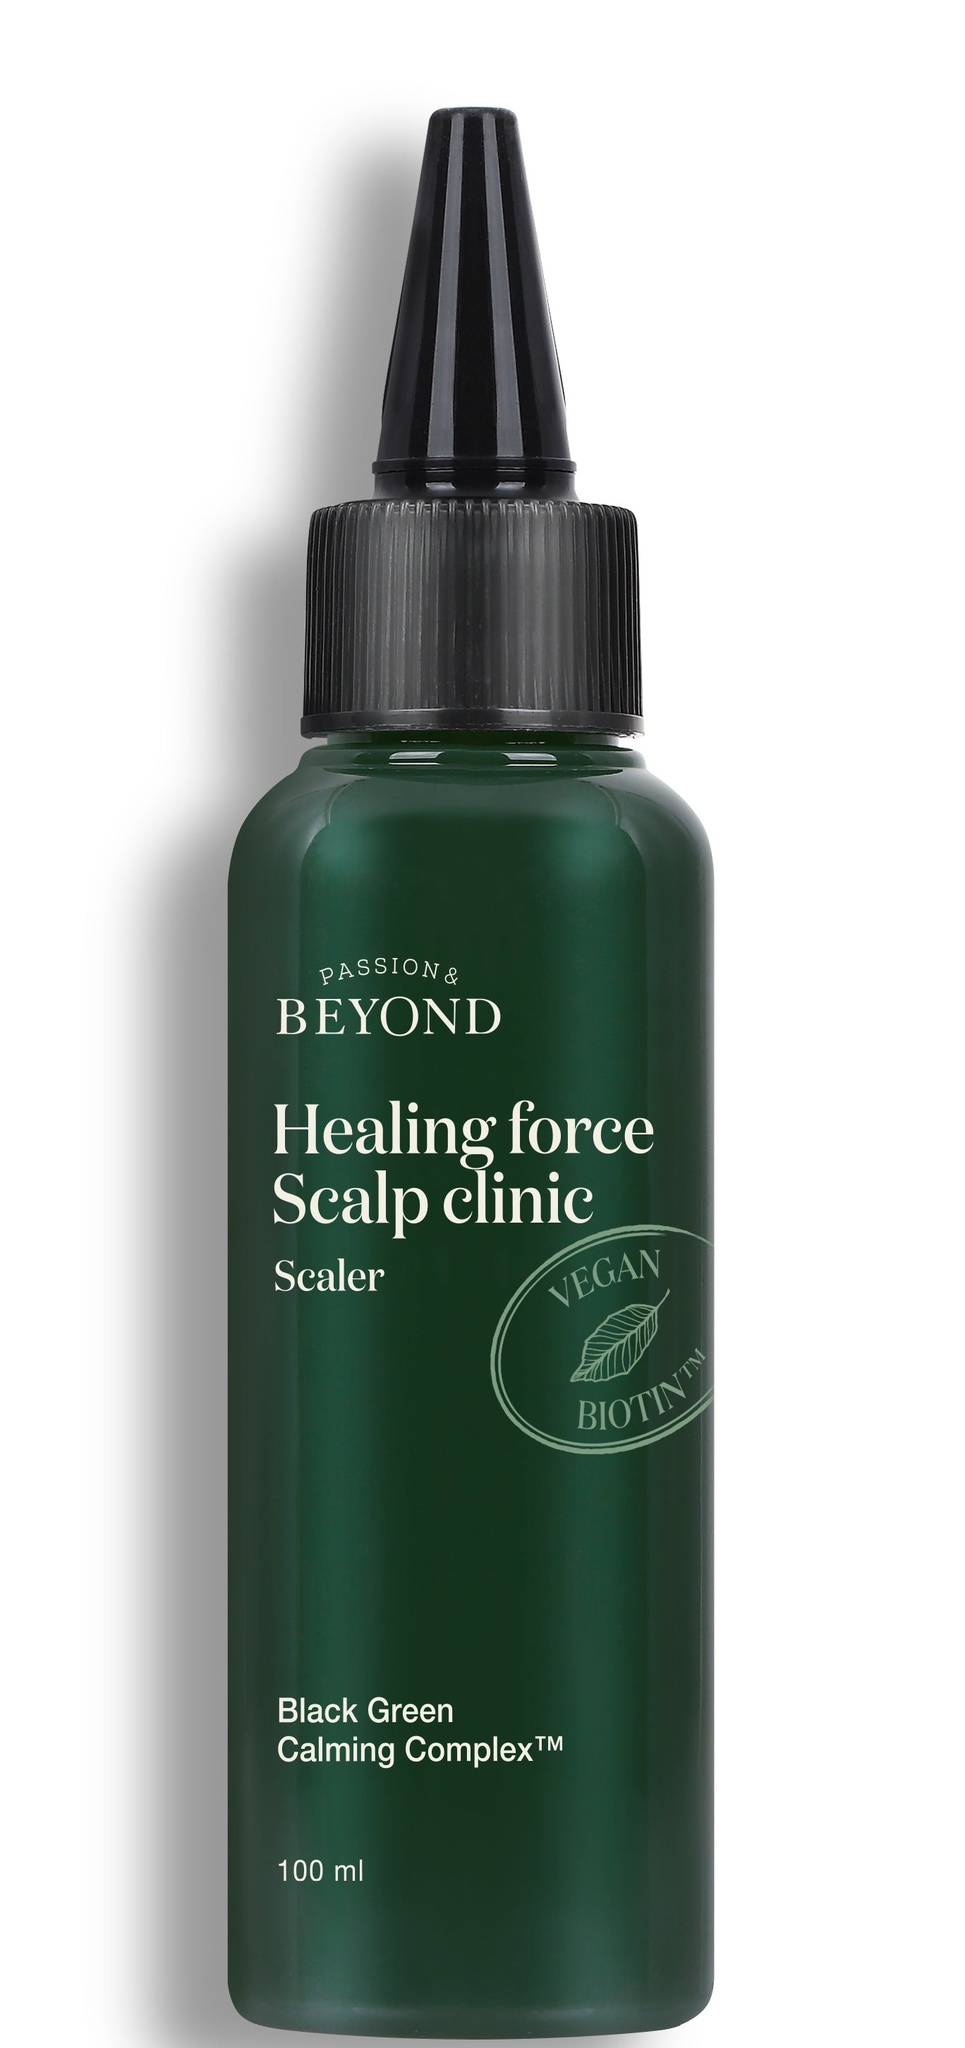 BEYOND Healing Force Scalp Clinic Scaler